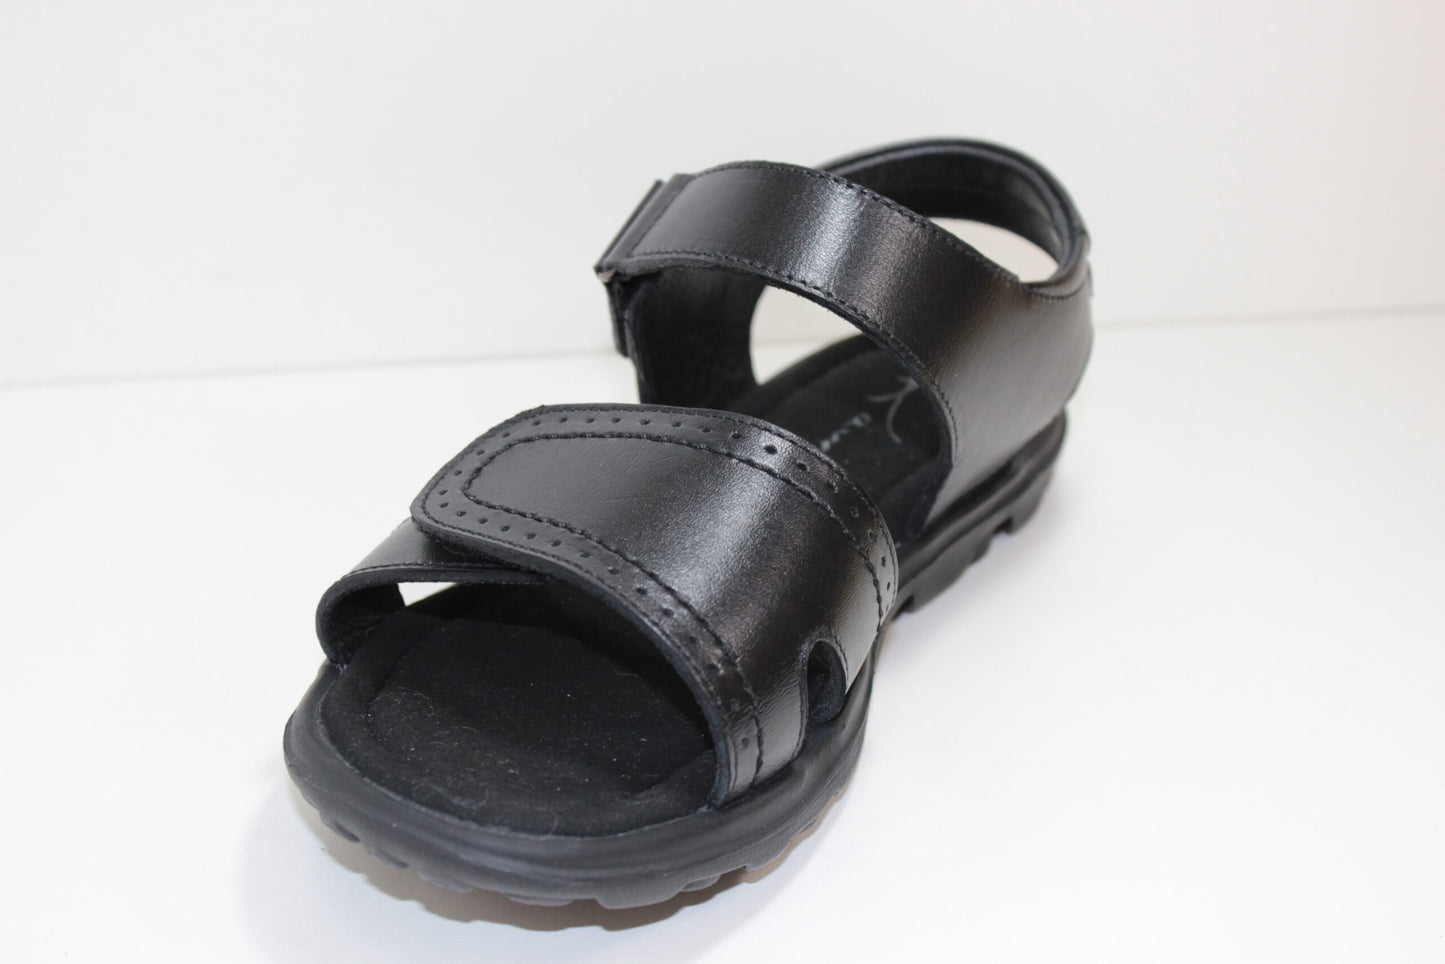 School Girls Sandals Kawa Brand Black Leather Upper - (GS01) - F